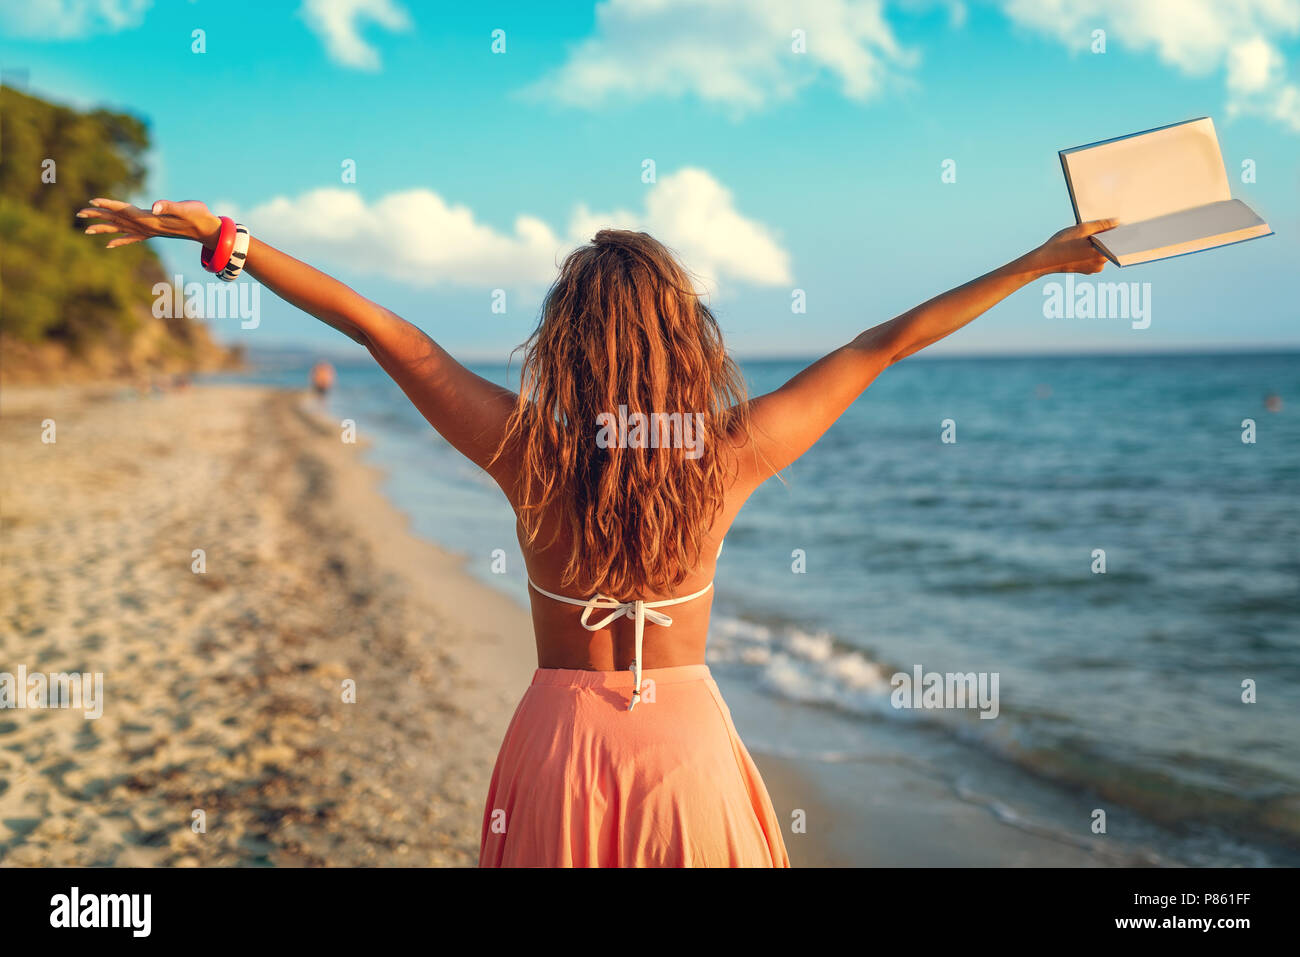 Vue arrière d'une belle jeune femme jouissant sur la plage avec des adresses de son bras ouverts. Banque D'Images